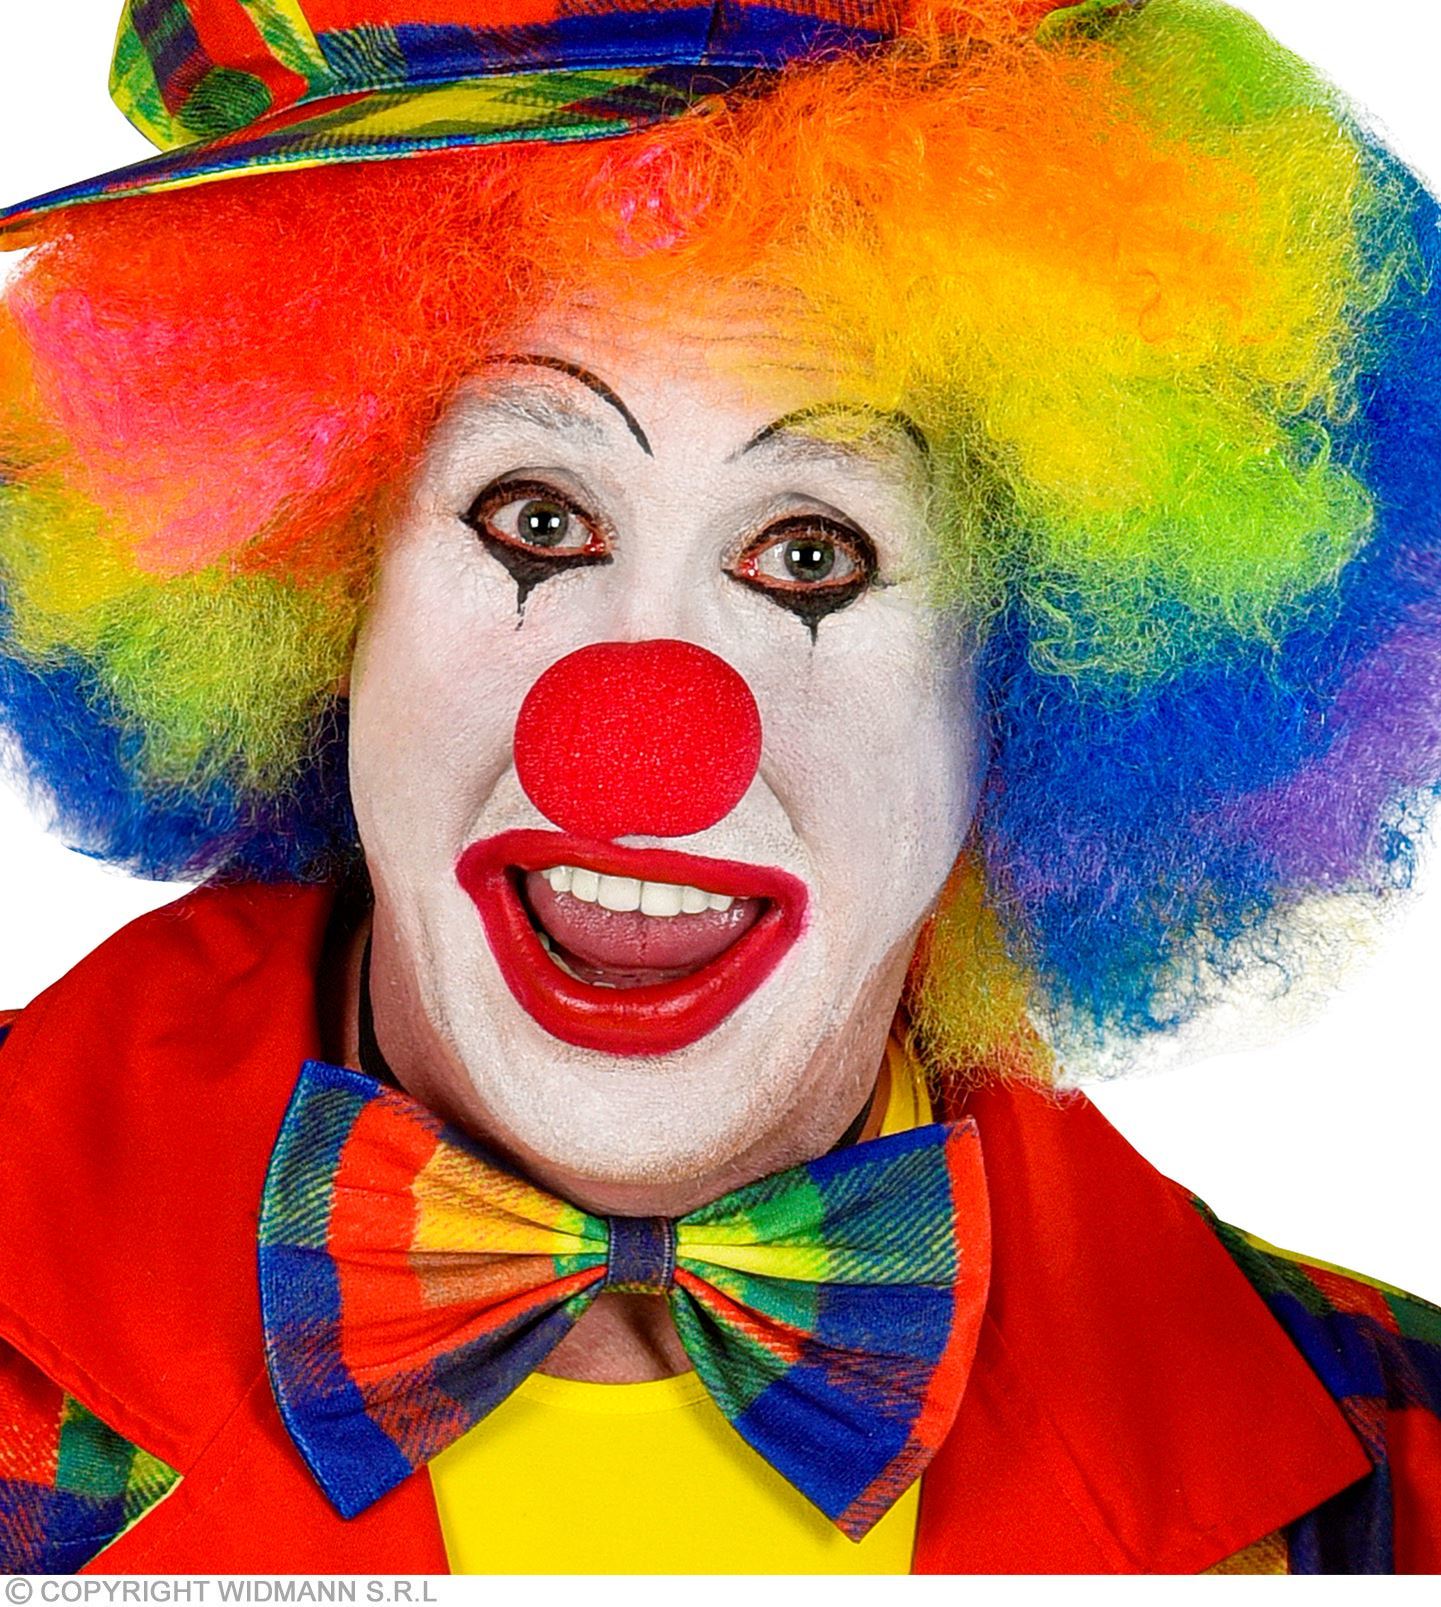 Clowns met vrolijke kleuren Goedkoop